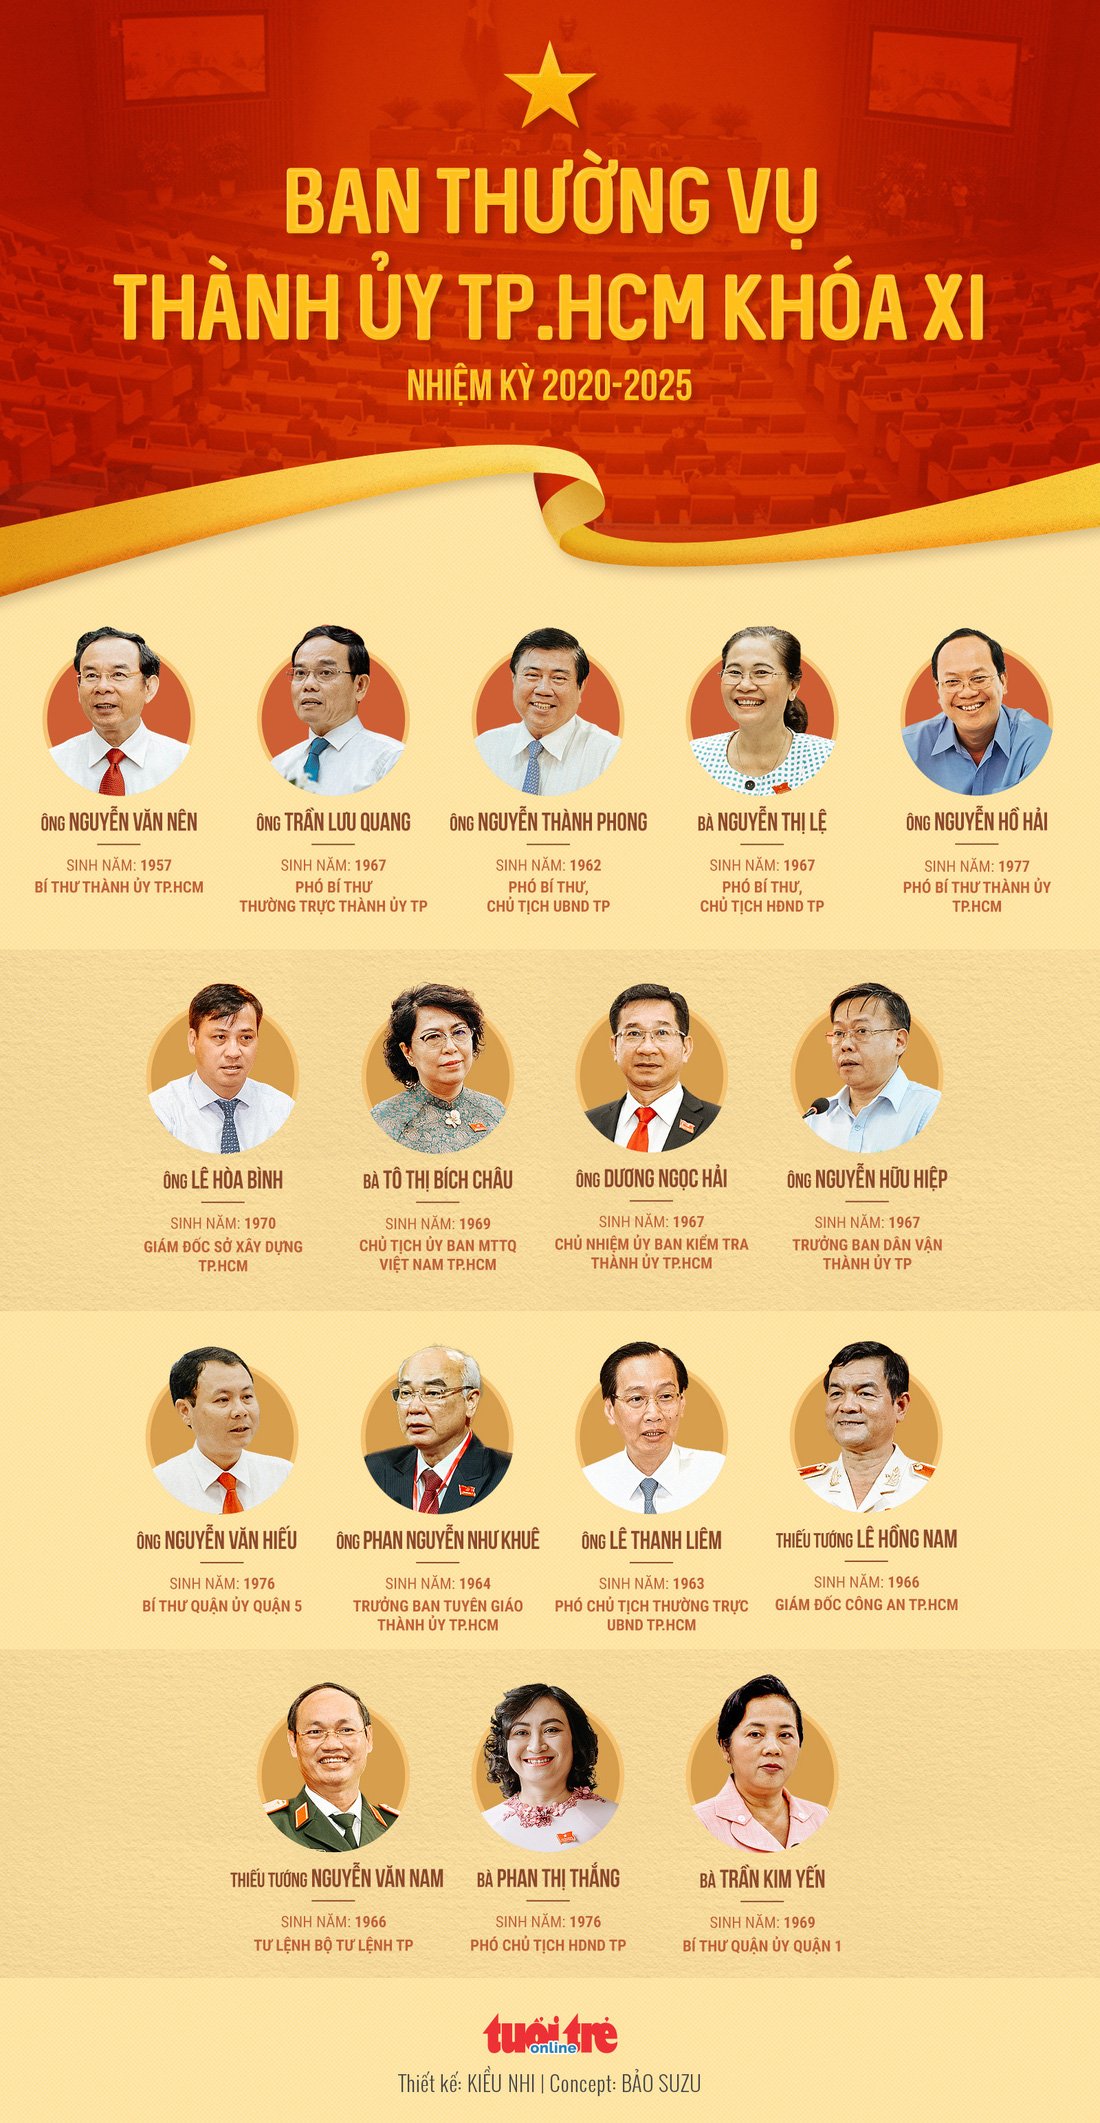 16 thành viên Ban thường vụ Thành ủy TP.HCM nhiệm kỳ 2020 - 2025 - Ảnh 1.